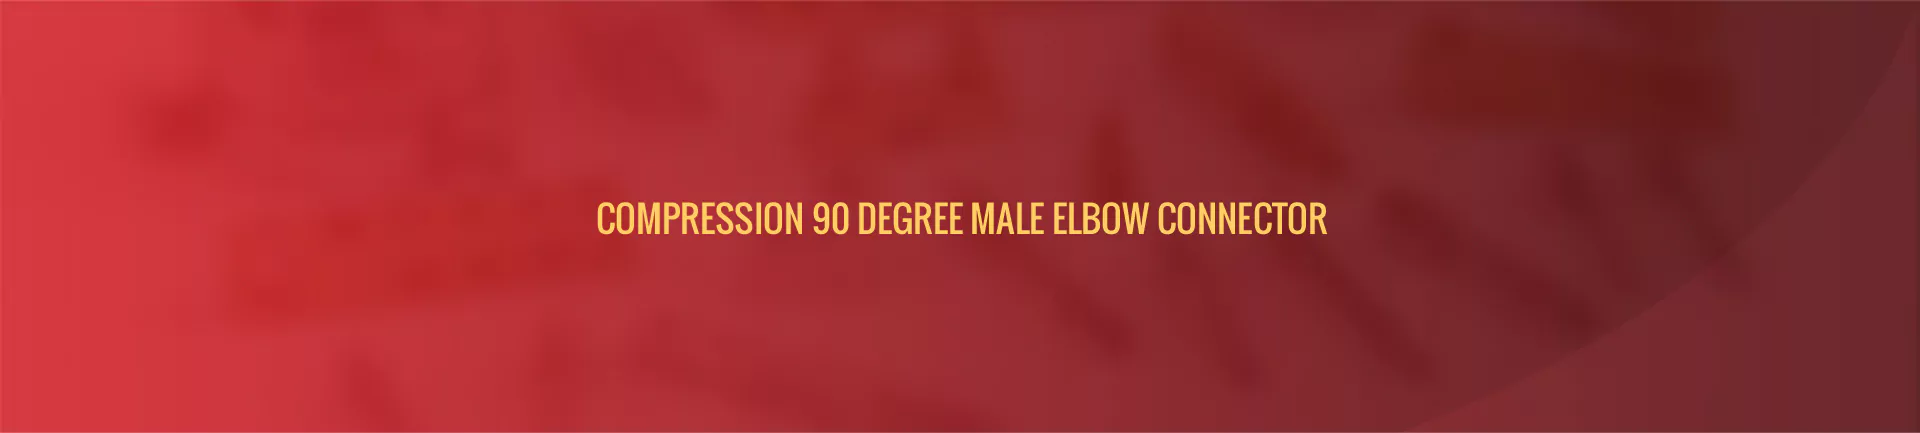 compression-90-degree-male-banner